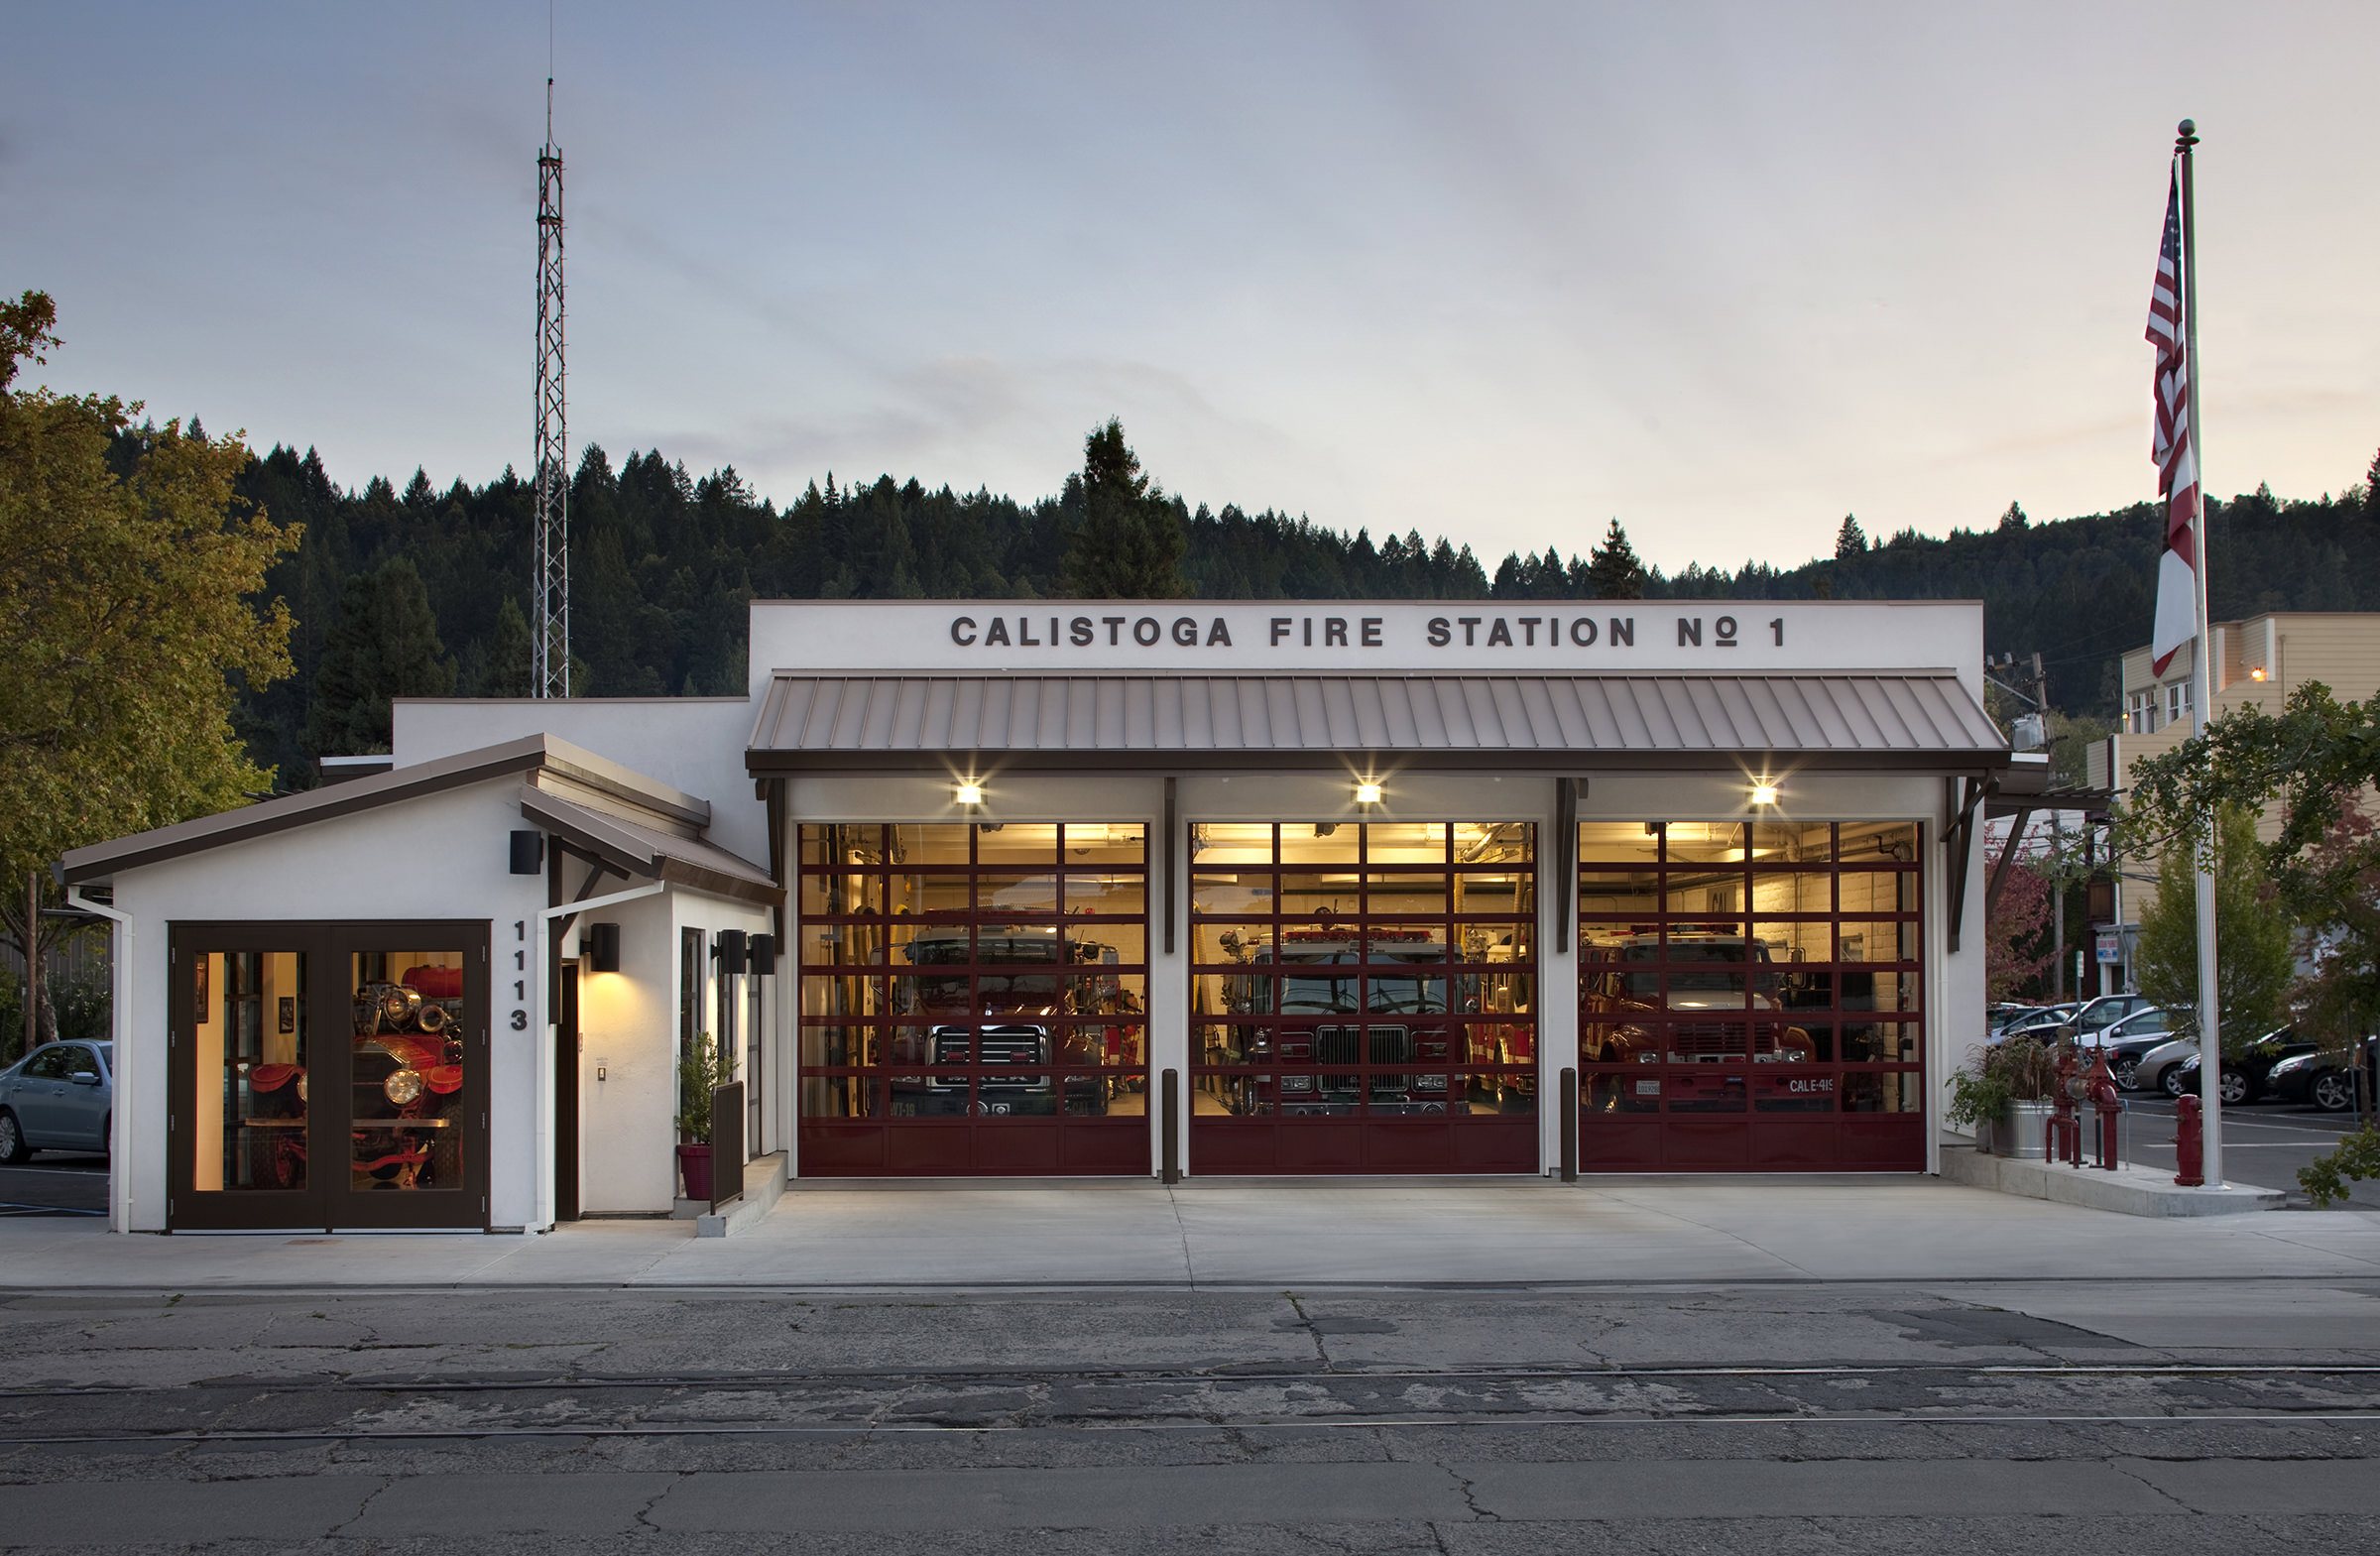 Calistoga Fire Station No. 1